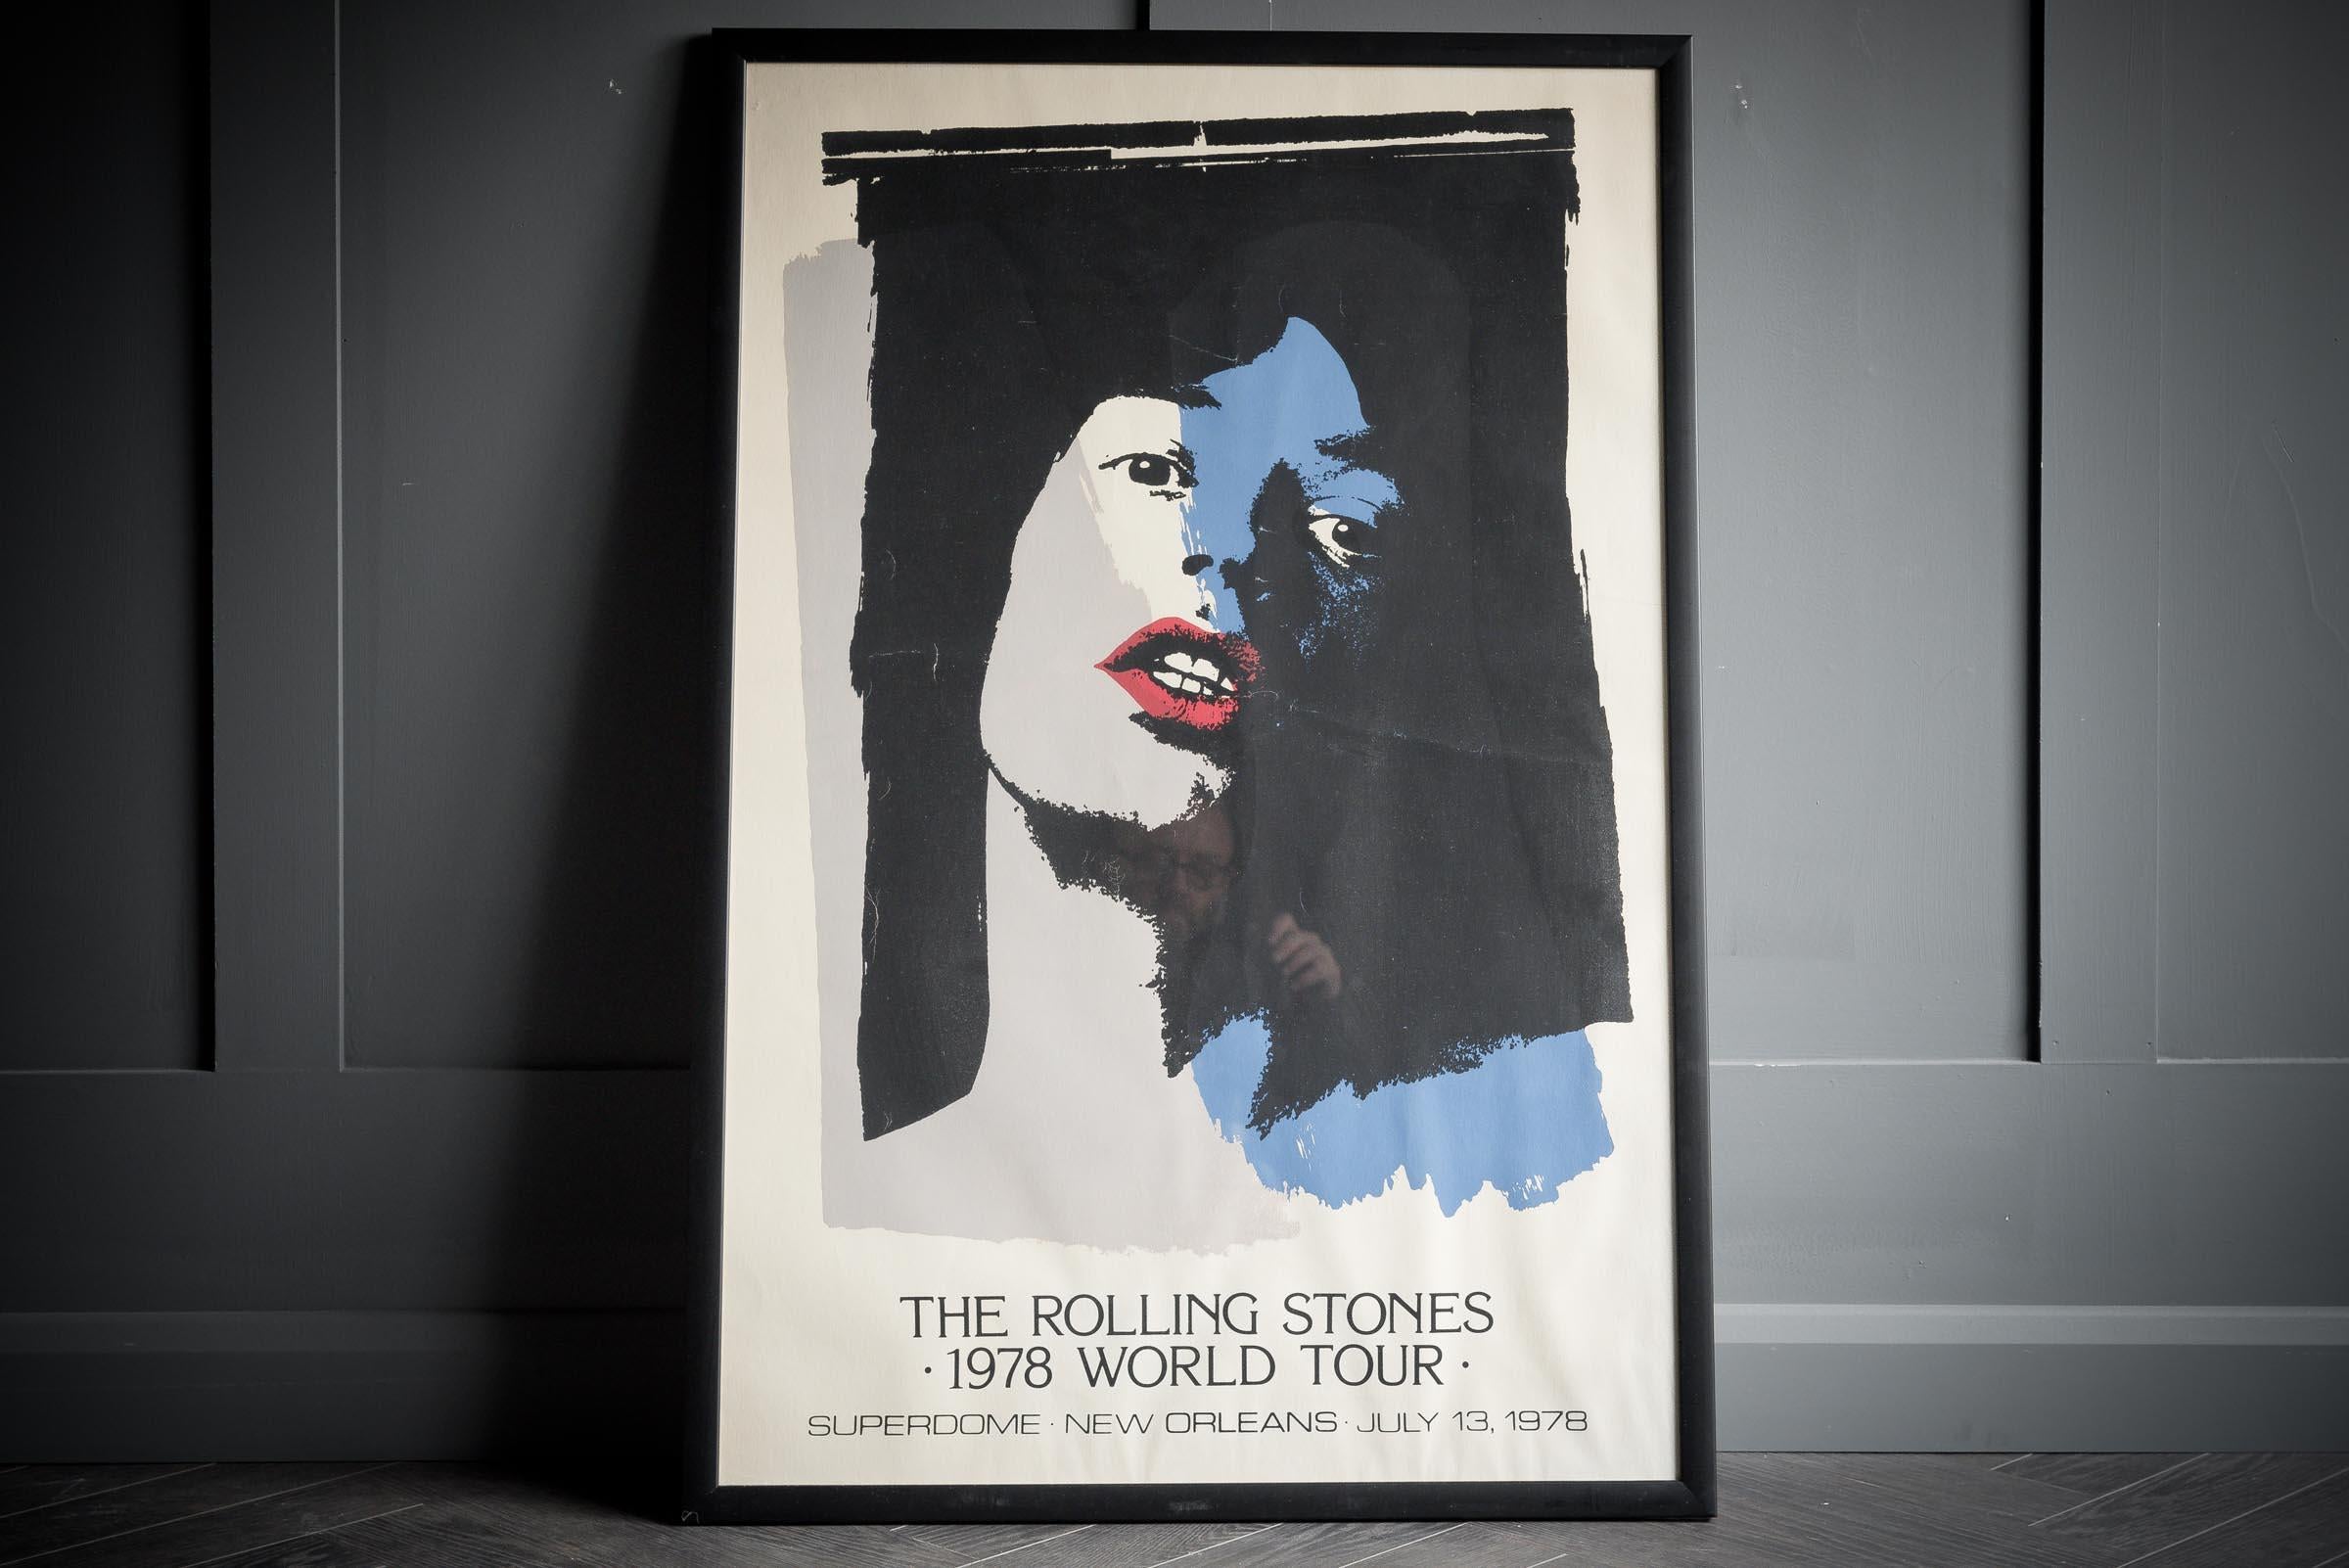 Affiche originale de la tournée mondiale des Rolling Stones de 1978.